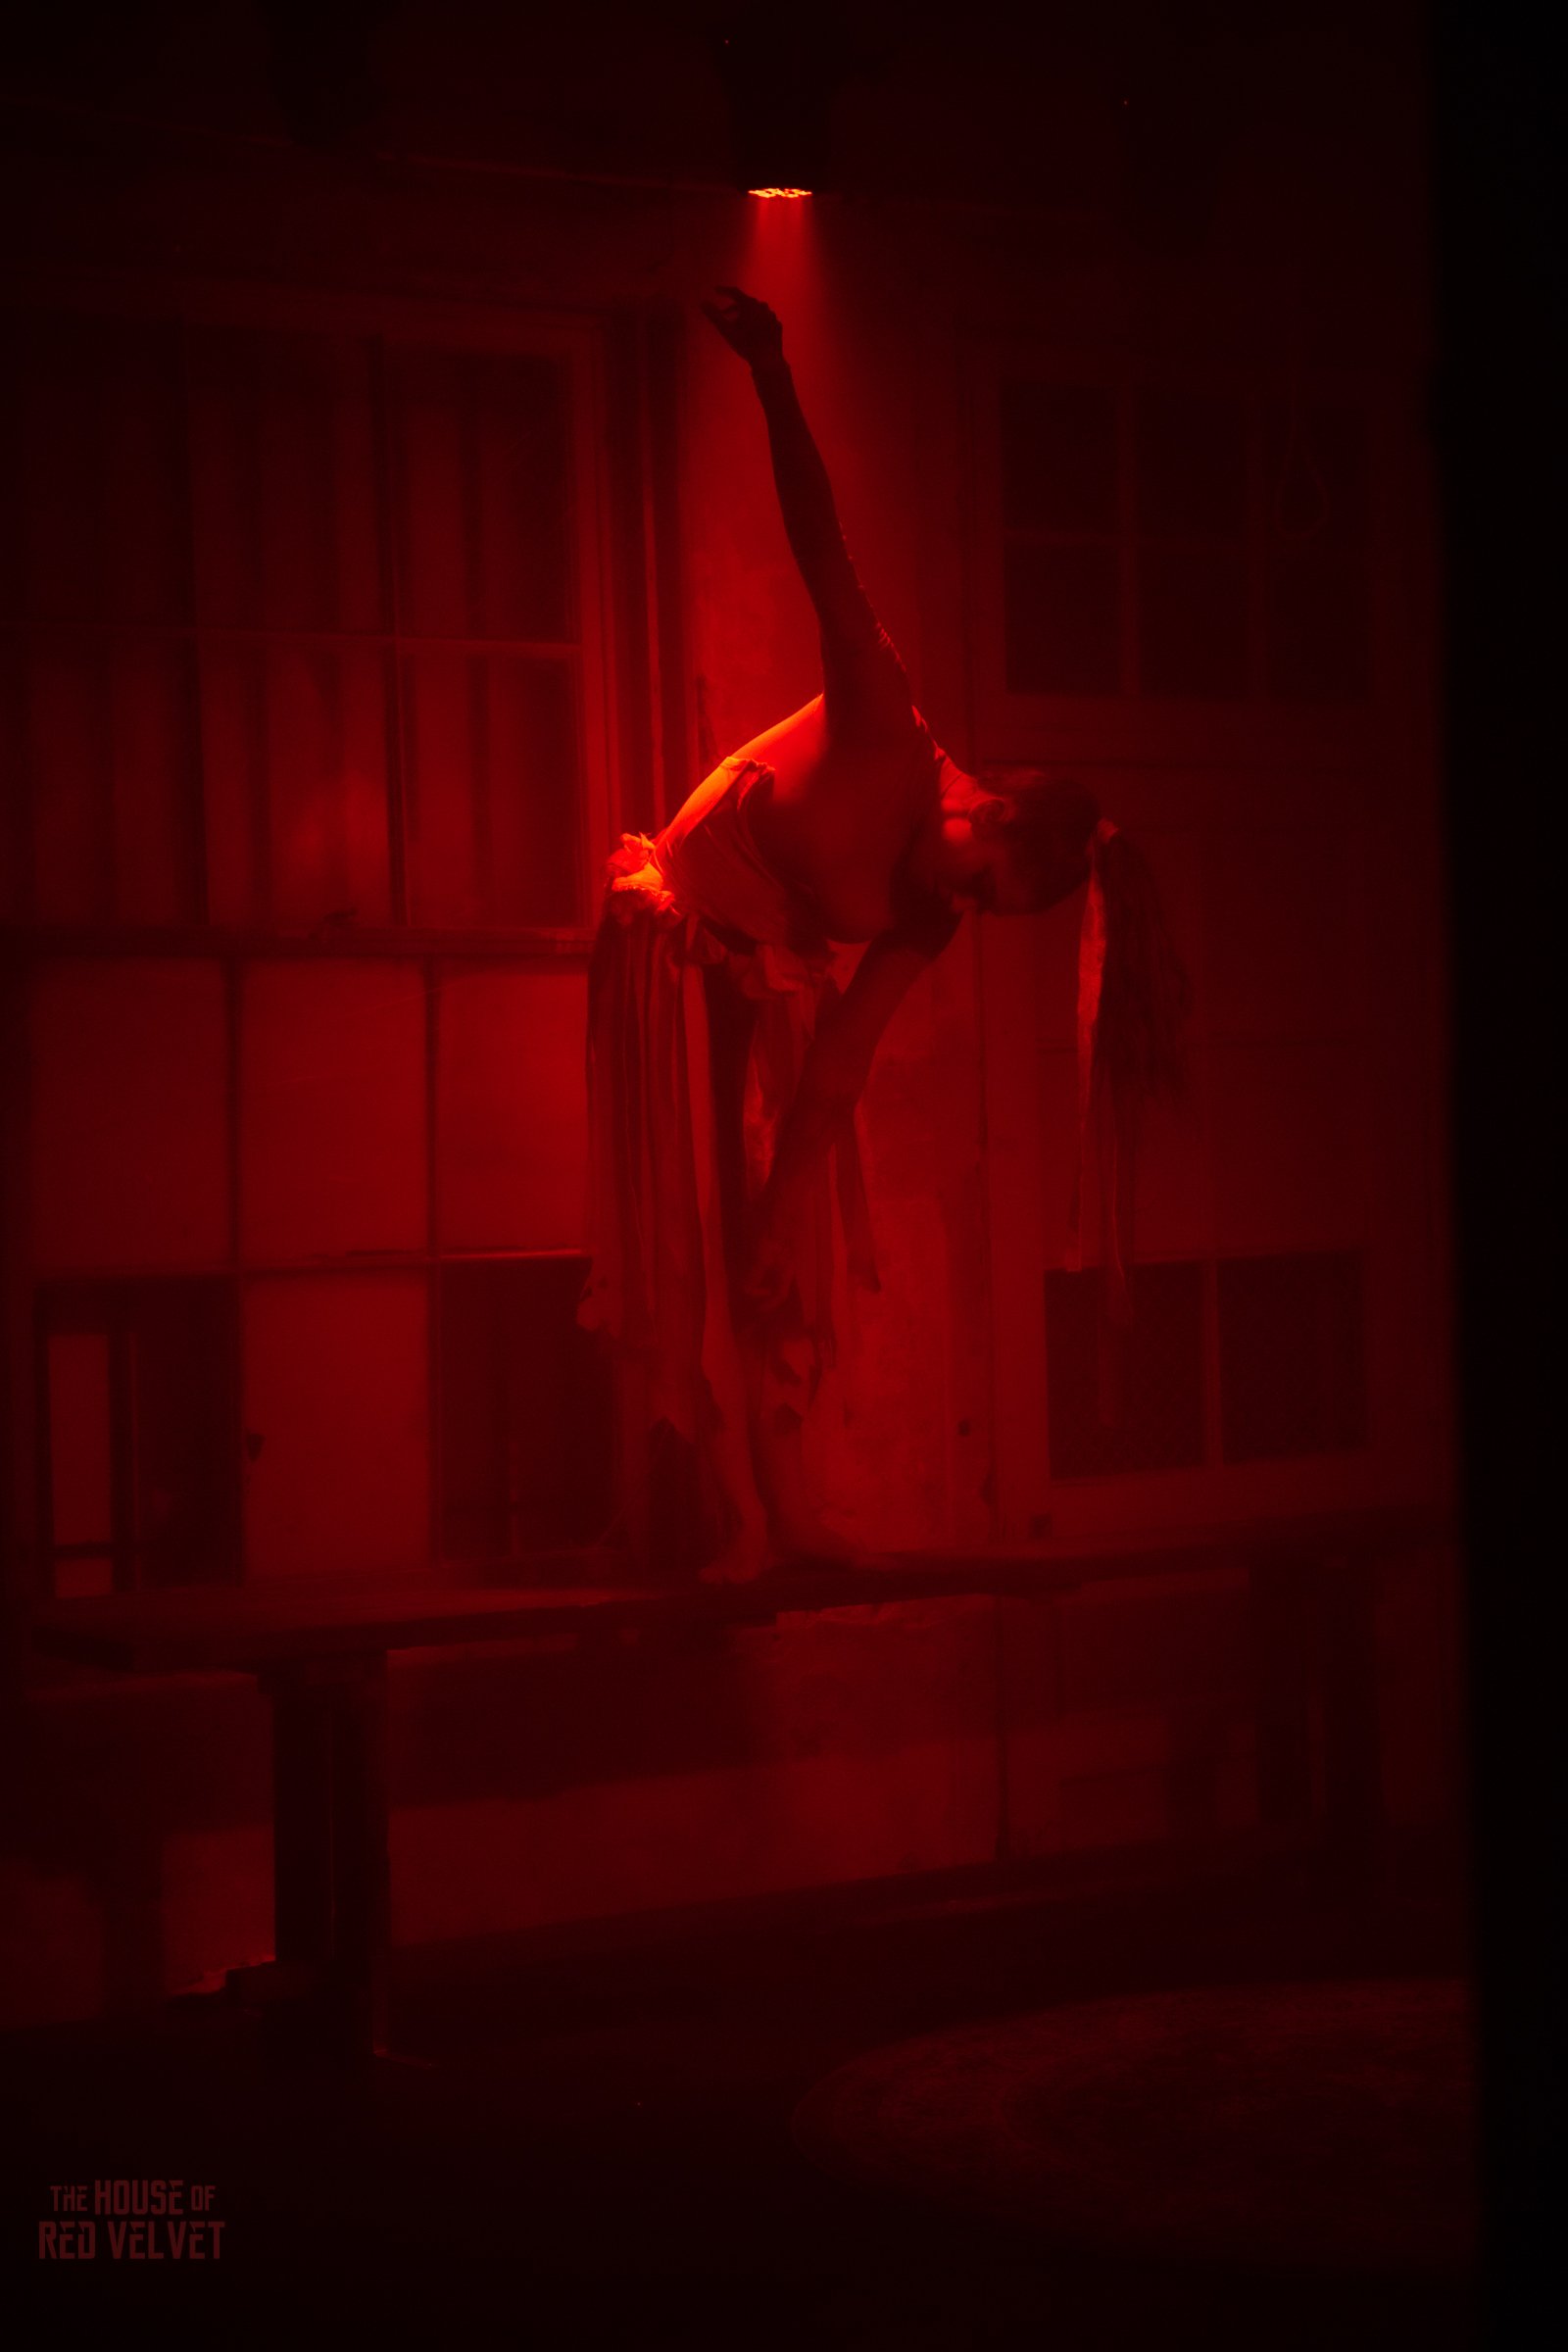 house-of-red-velvet-performance-dark-art-surreal-1931.jpg